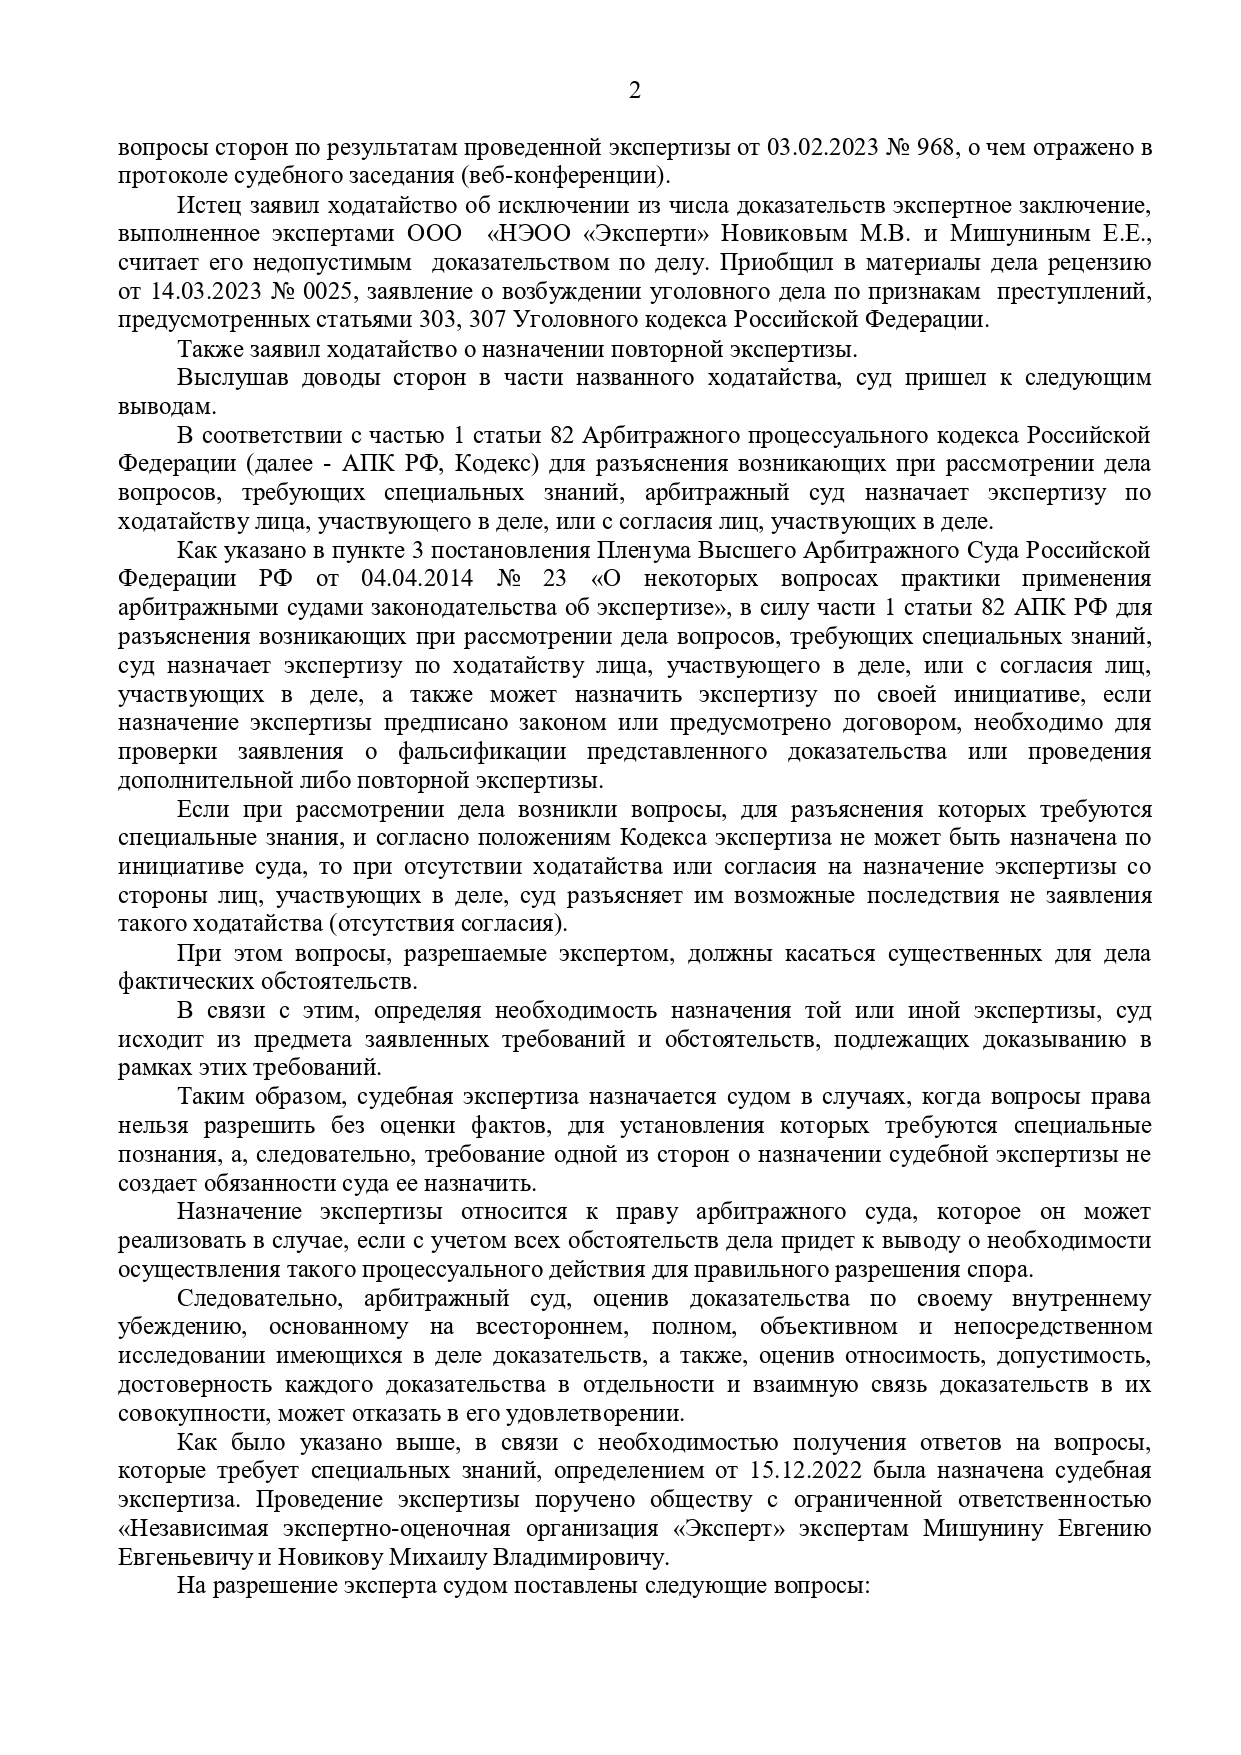 Арбитражный суд Ставропольского края вынес решение по делу №А63-4388/2022